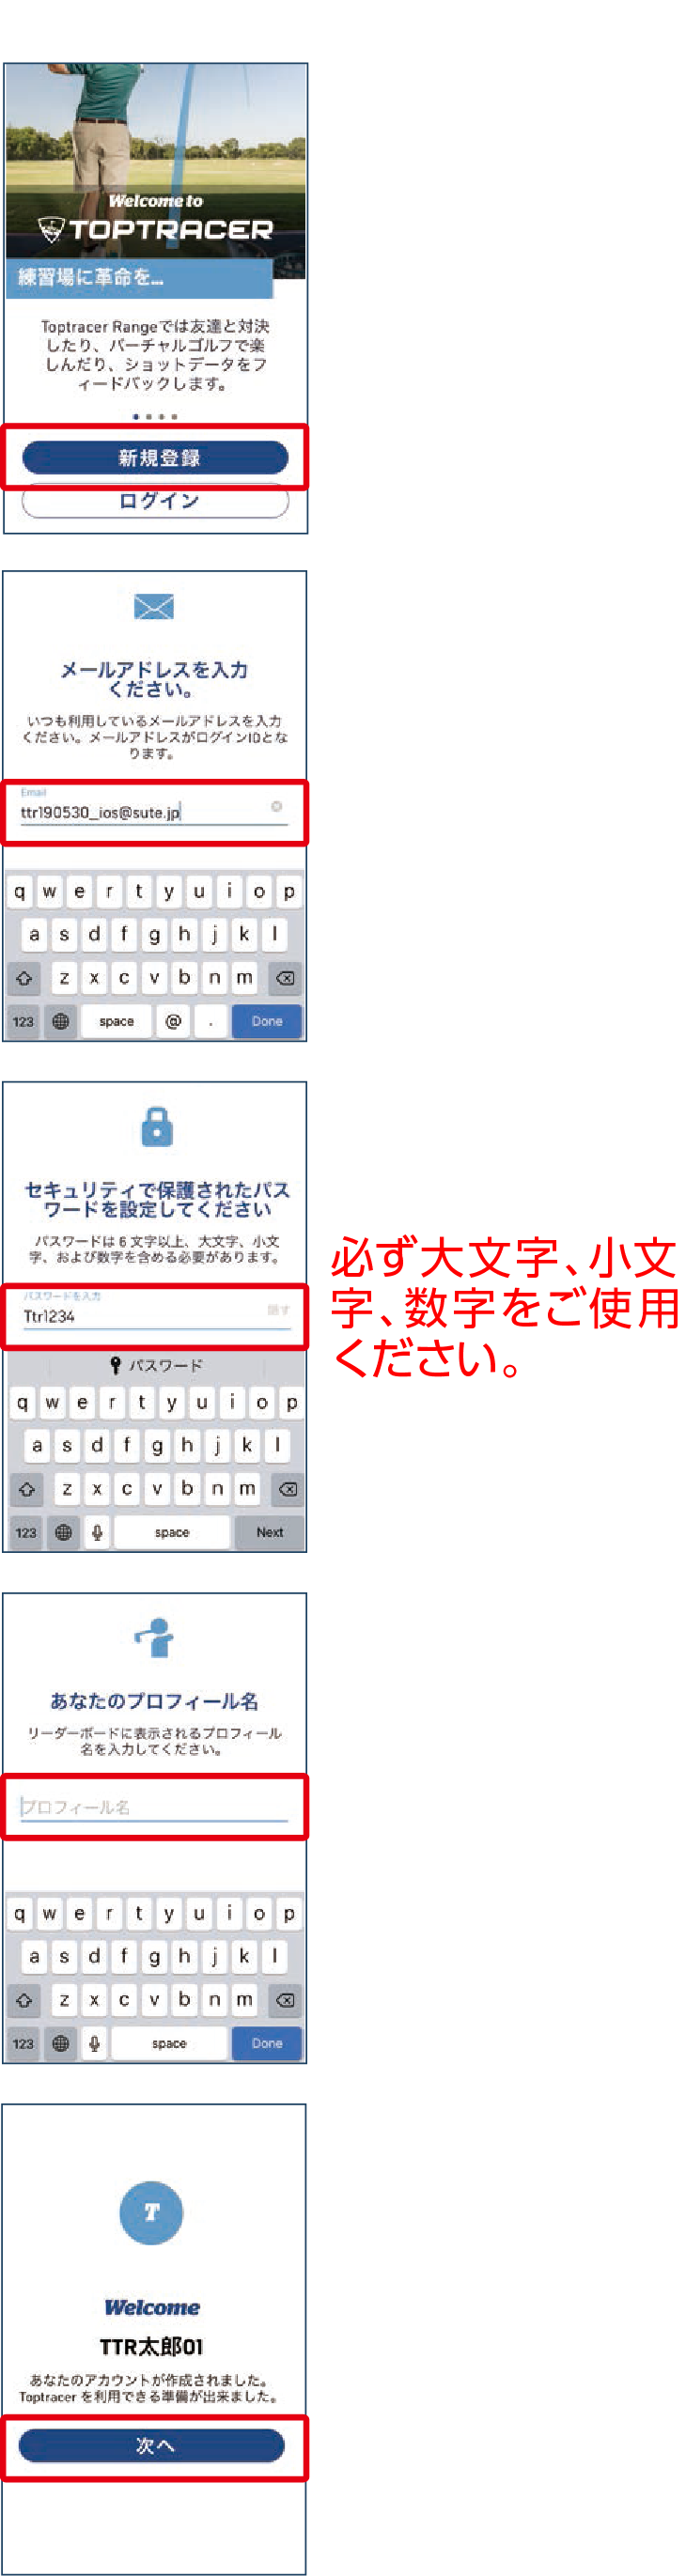 ①新規登録を押す ②ご使用のメールアドレスを入力して右下のDONEを押す。 ③パスワードを入力。2回入力してDONEを押す。必ず大文字、小文字、数字をご使用ください。④プロフィール名を入力。英数字または日本語でも入力可能。5文字以上、スペースは入力不可。⑤こちらの画面が表示されれば完了です。「次へ」を押す。